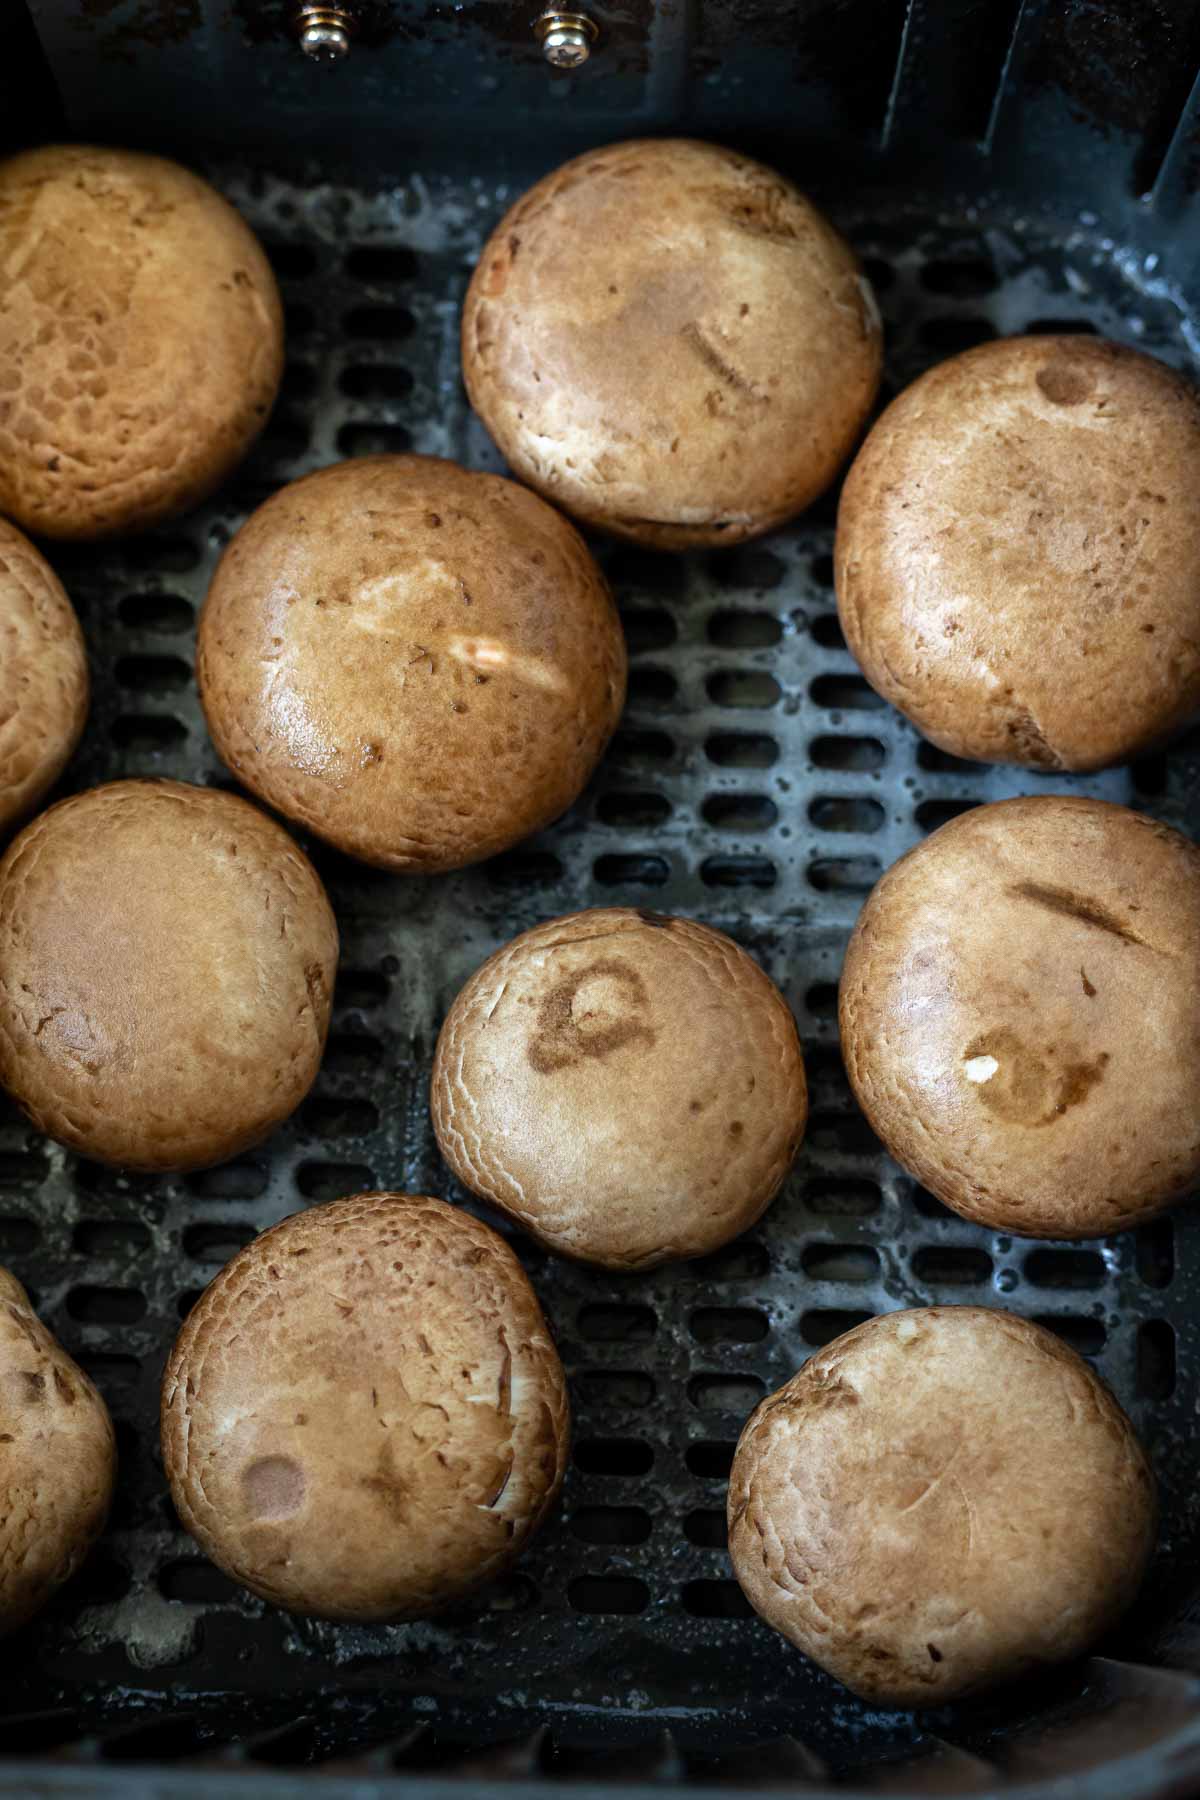 mushroom caps in air fryer basket